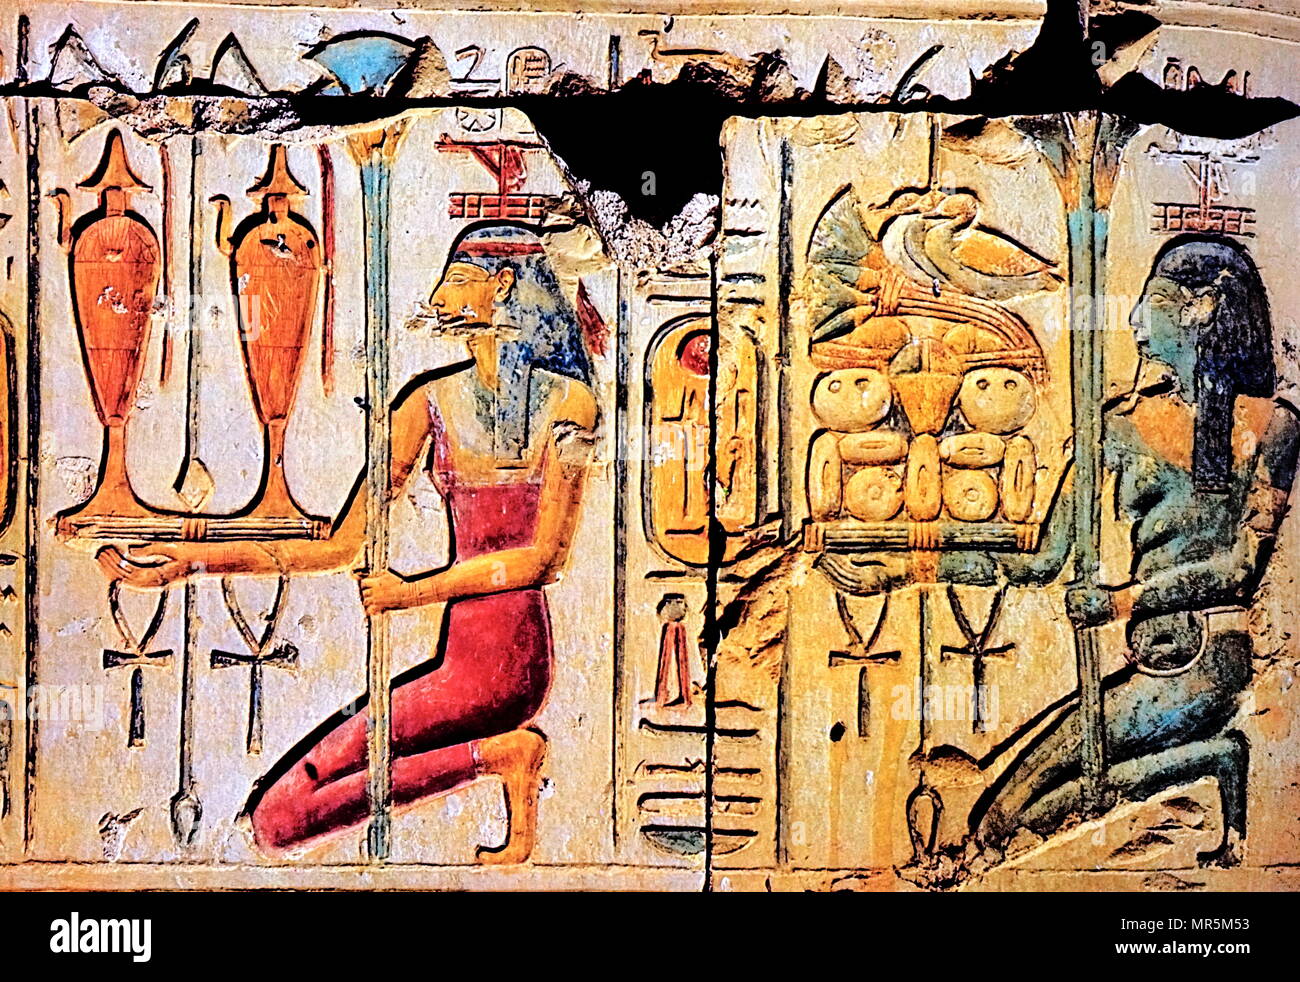 Bemalte wand Relief im Tempel von Ramses II. in Abydos, Ägypten. Dies entspricht einem Angebot von Essen und Wein zu den Göttern. Ramses II. regierte 1279-1213 v. Chr.. Er war der dritte Pharao der 19. Dynastie. Stockfoto